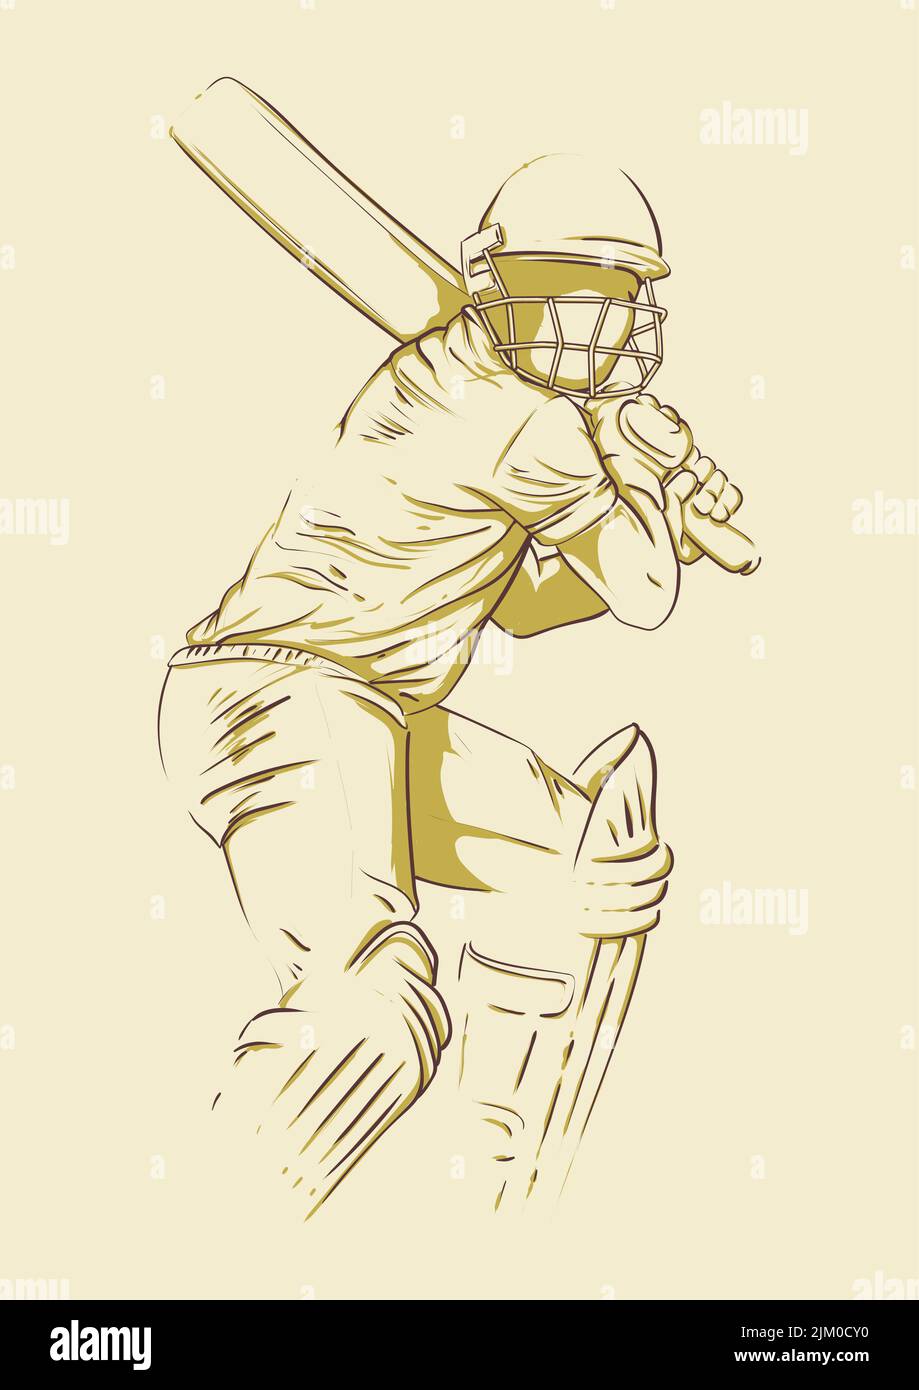 1644 Cricket Batsman Sketch Images Stock Photos  Vectors  Shutterstock